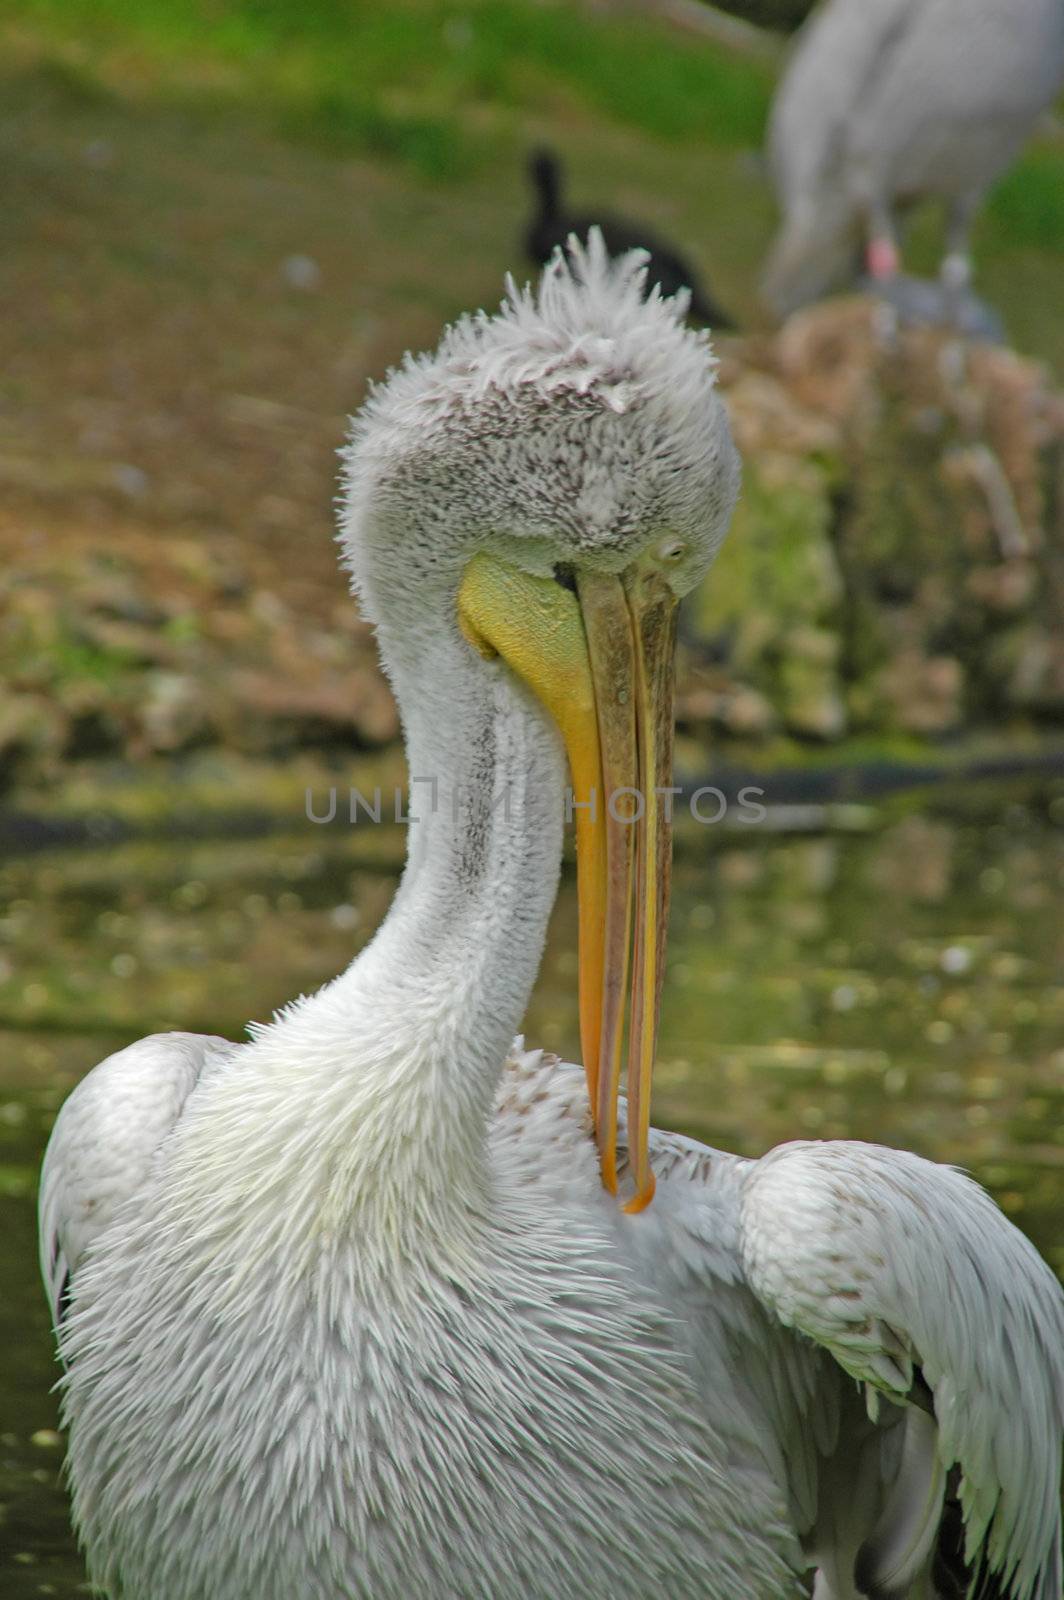 pelican in natural habitat